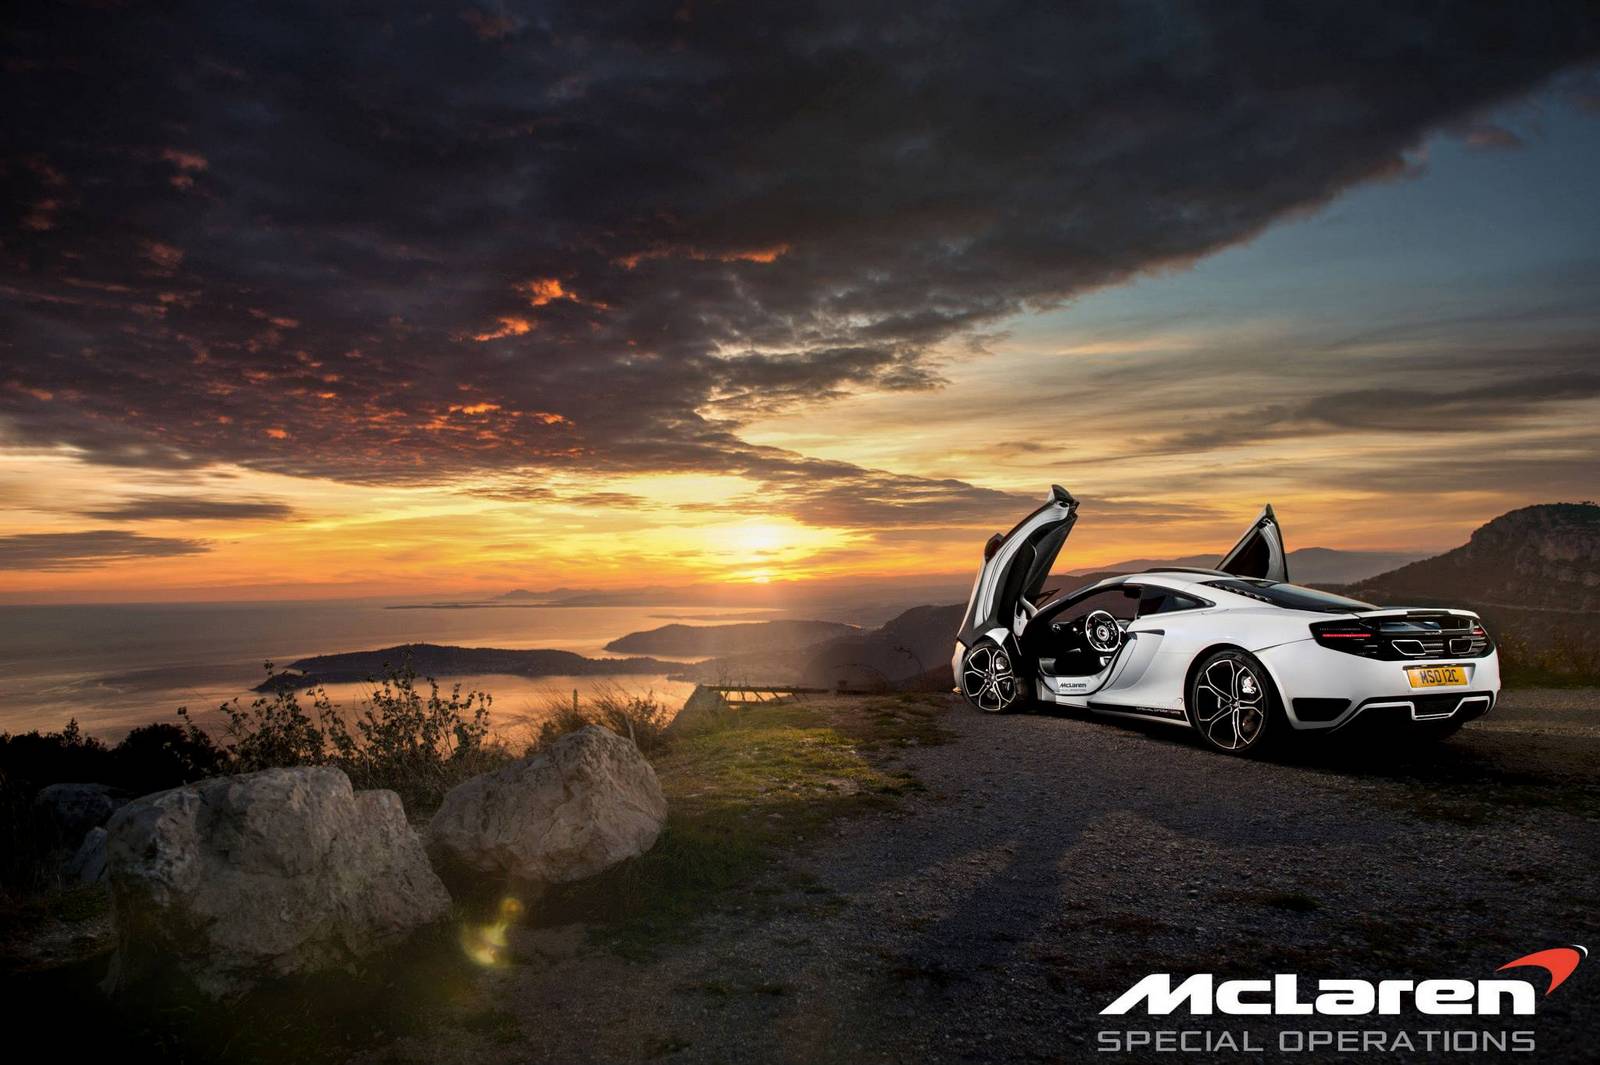 McLaren MSO 12C Concept Car